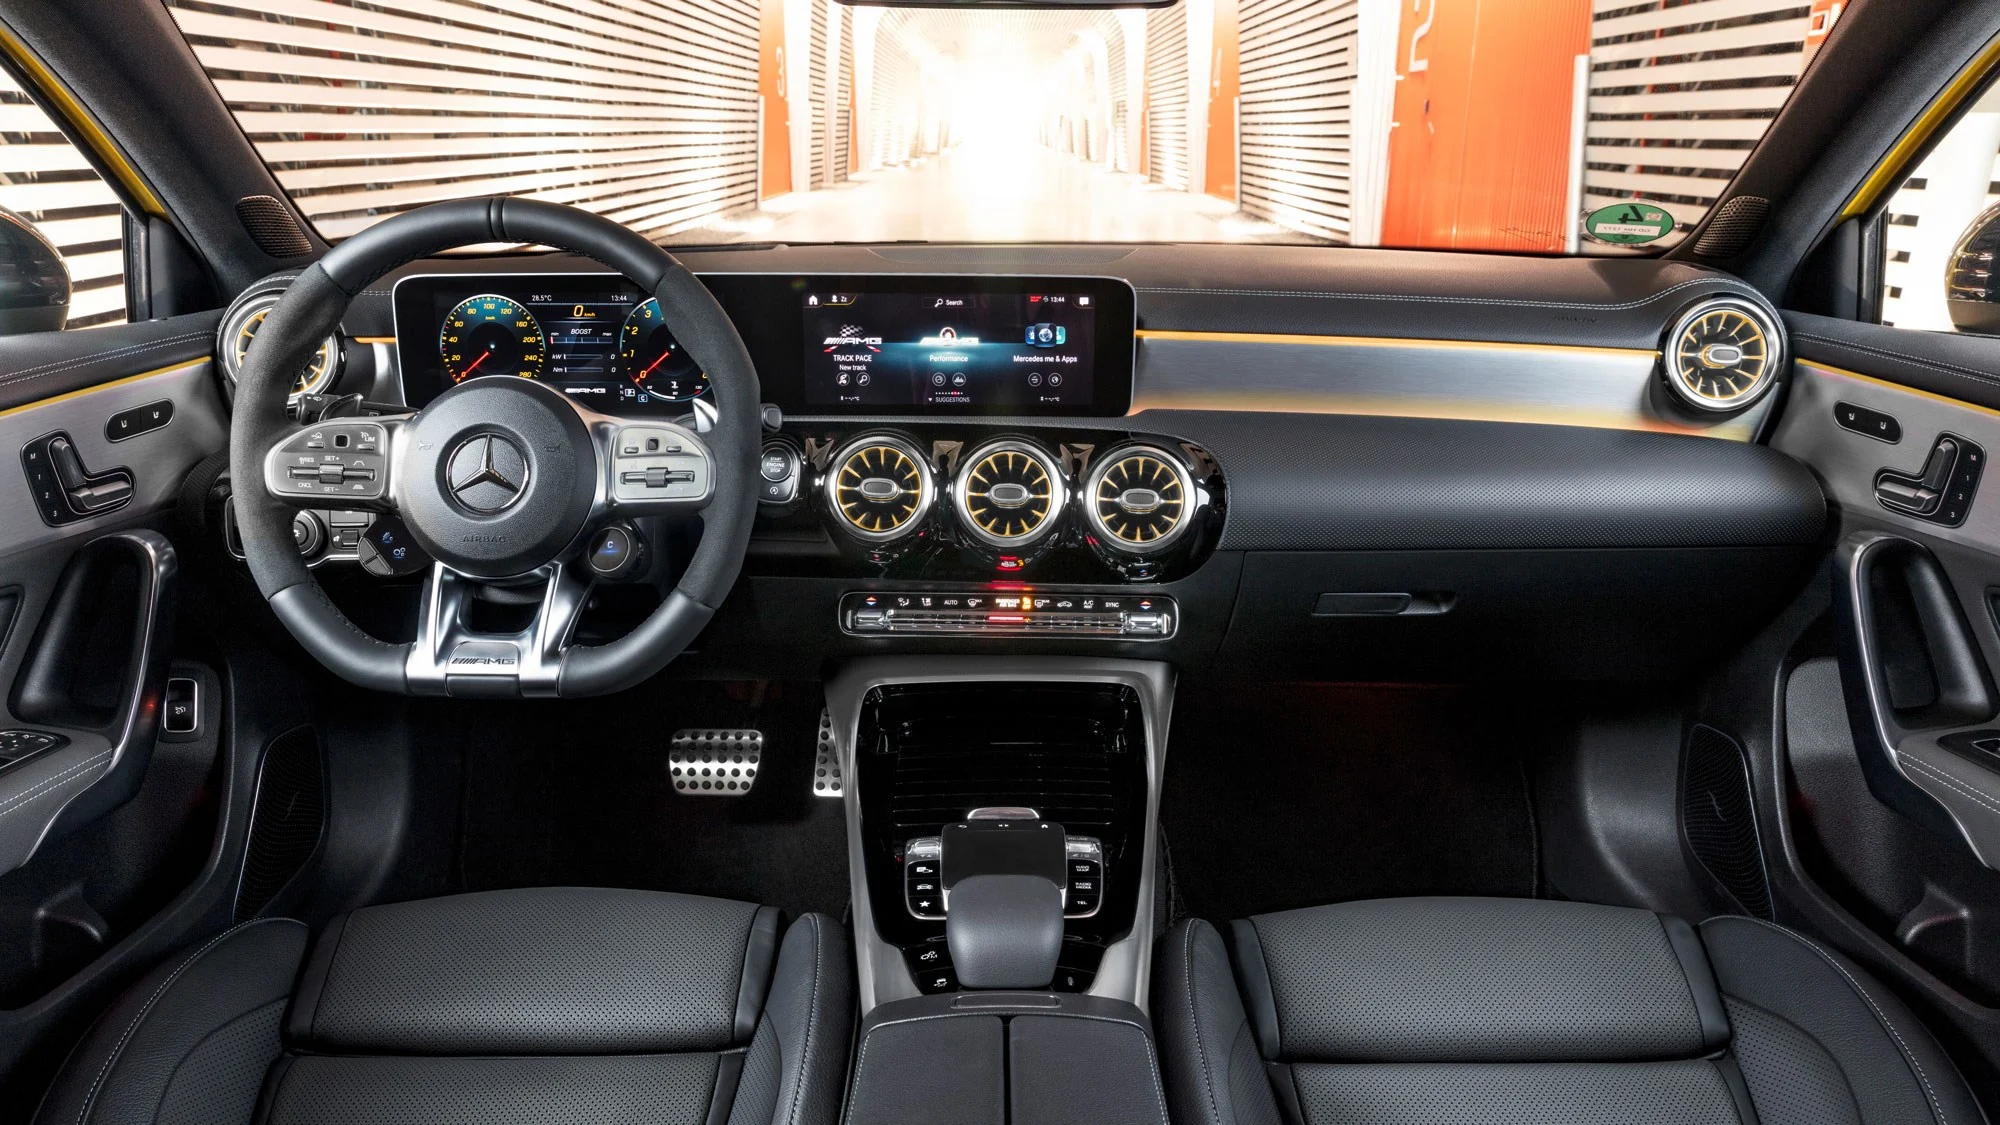 Mercedes-Benz A 45 S AMG interior - Cockpit